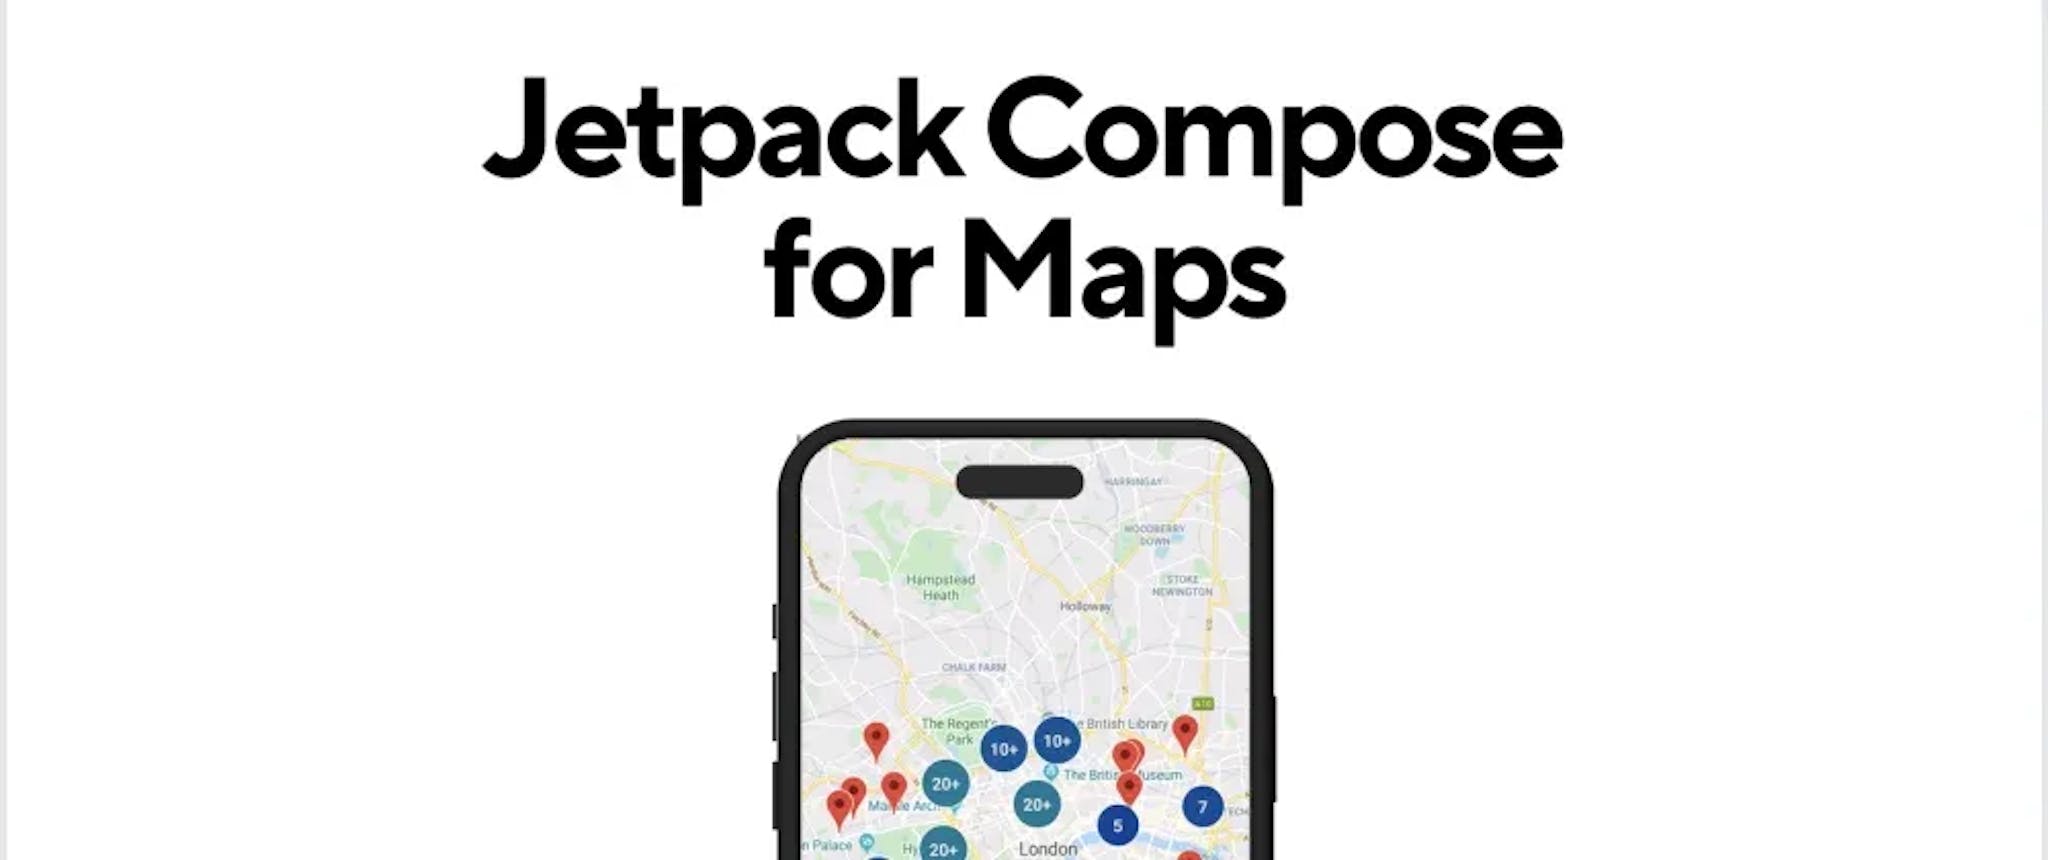 featured image - Mobile Karten mit Jetpack Compose transformieren: Erkenntnisse von Google I/O für Entwickler